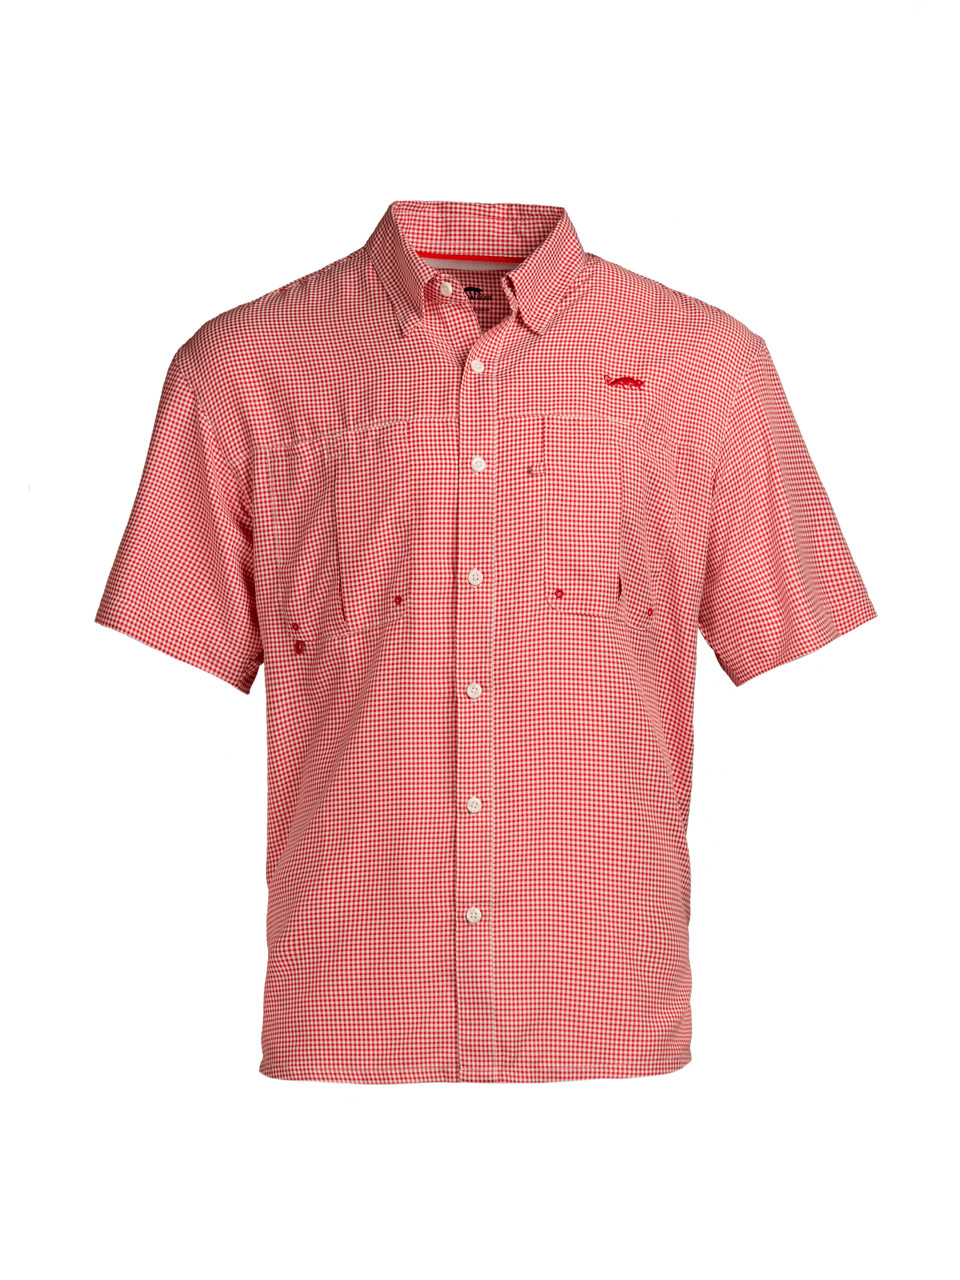 Intracoastal Short Sleeved Fishing Shirt - Red Check - Natural Gear